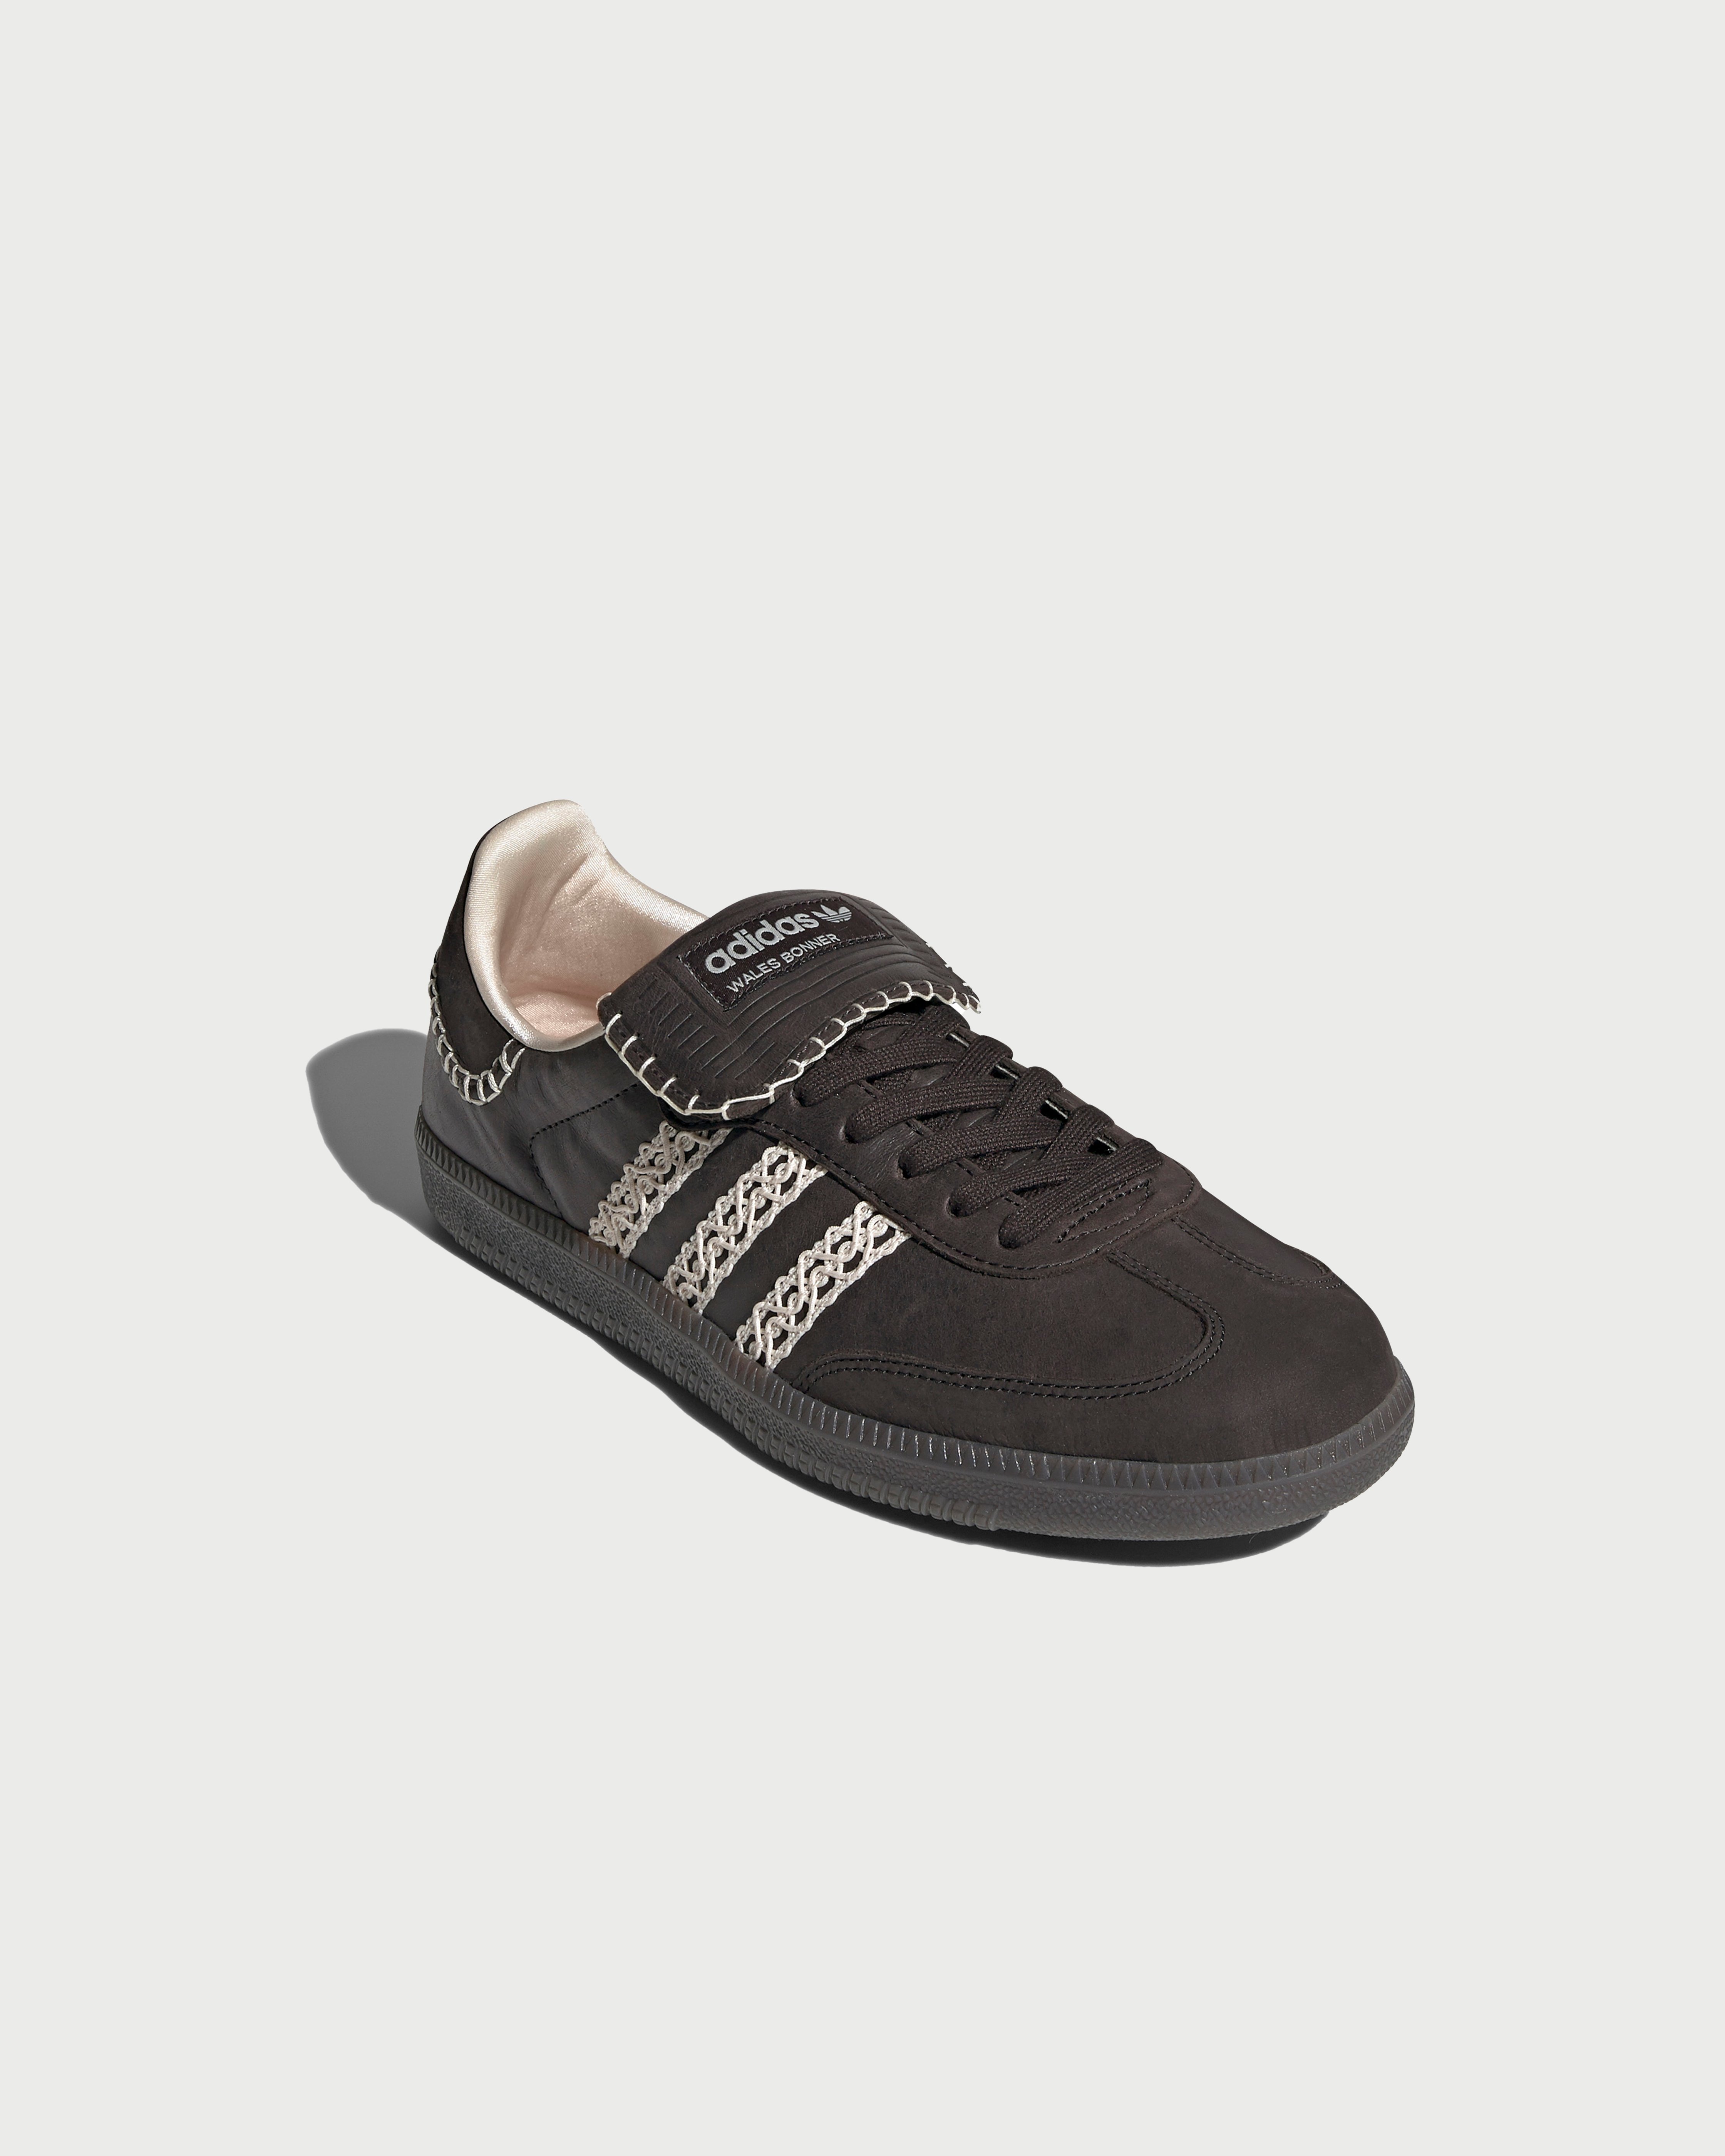 Adidas x Wales Bonner - Samba Black - Footwear - Black - Image 3